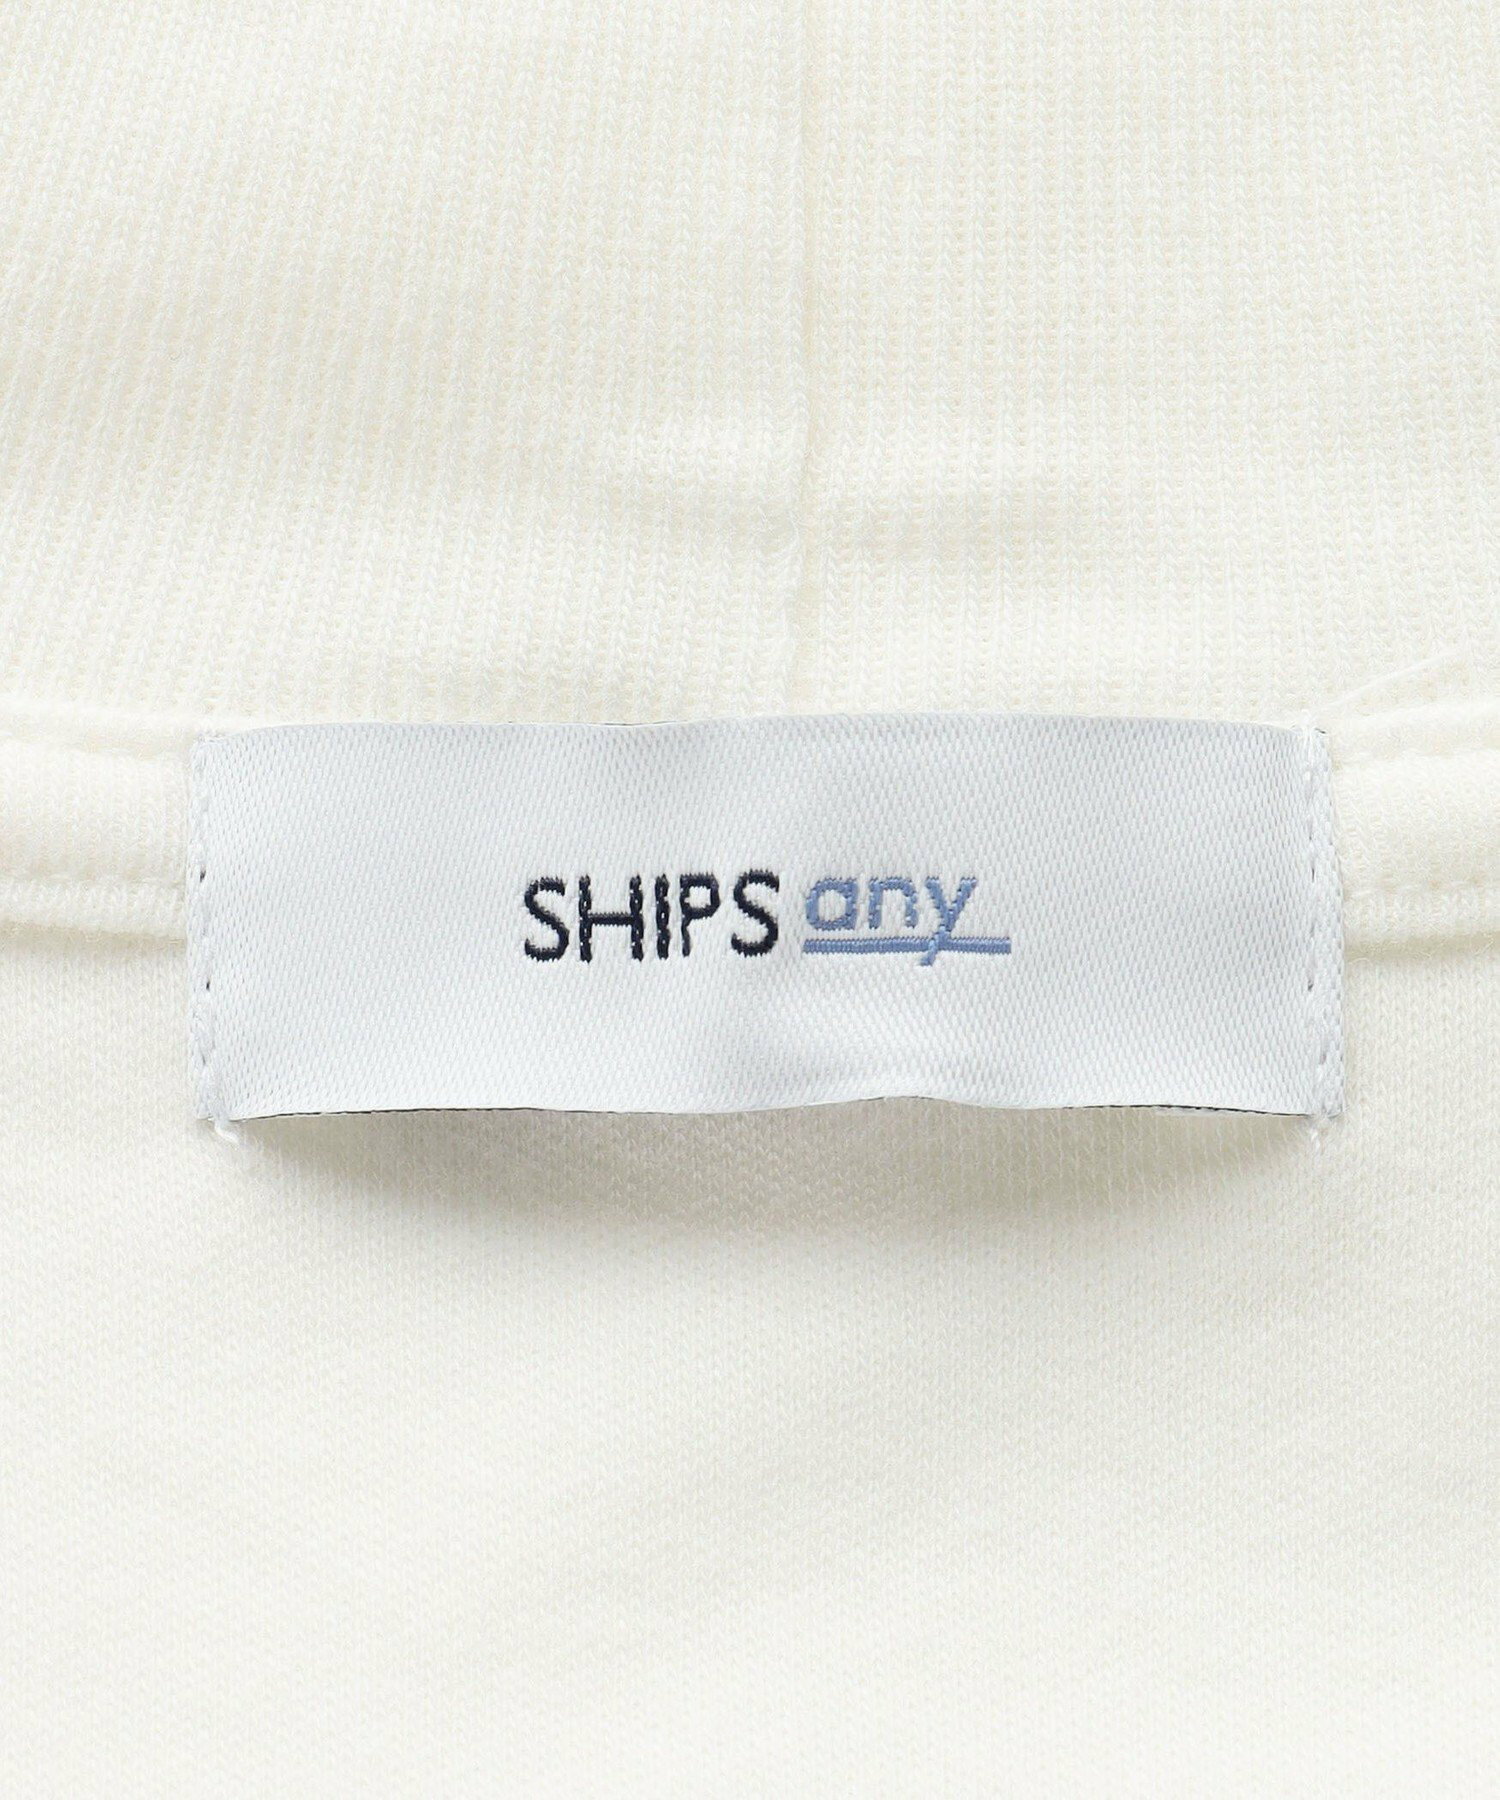 SHIPS any: モイスチャーコットン タートルネック ロングスリーブ Tシャツ (ロンT)